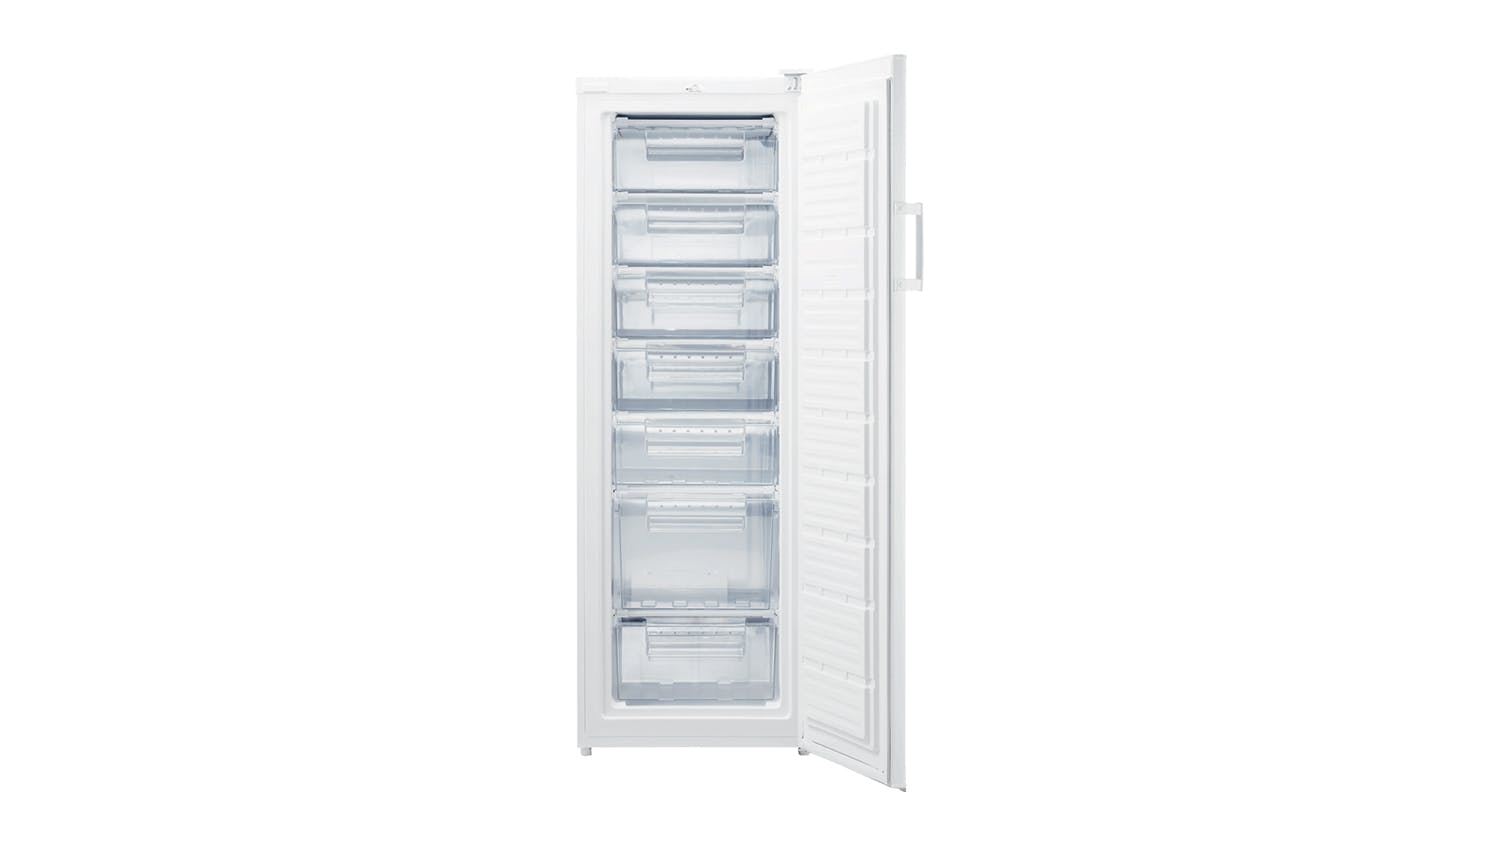 Haier 242L Single Door Vertical Freezer - White (HVF238VW)